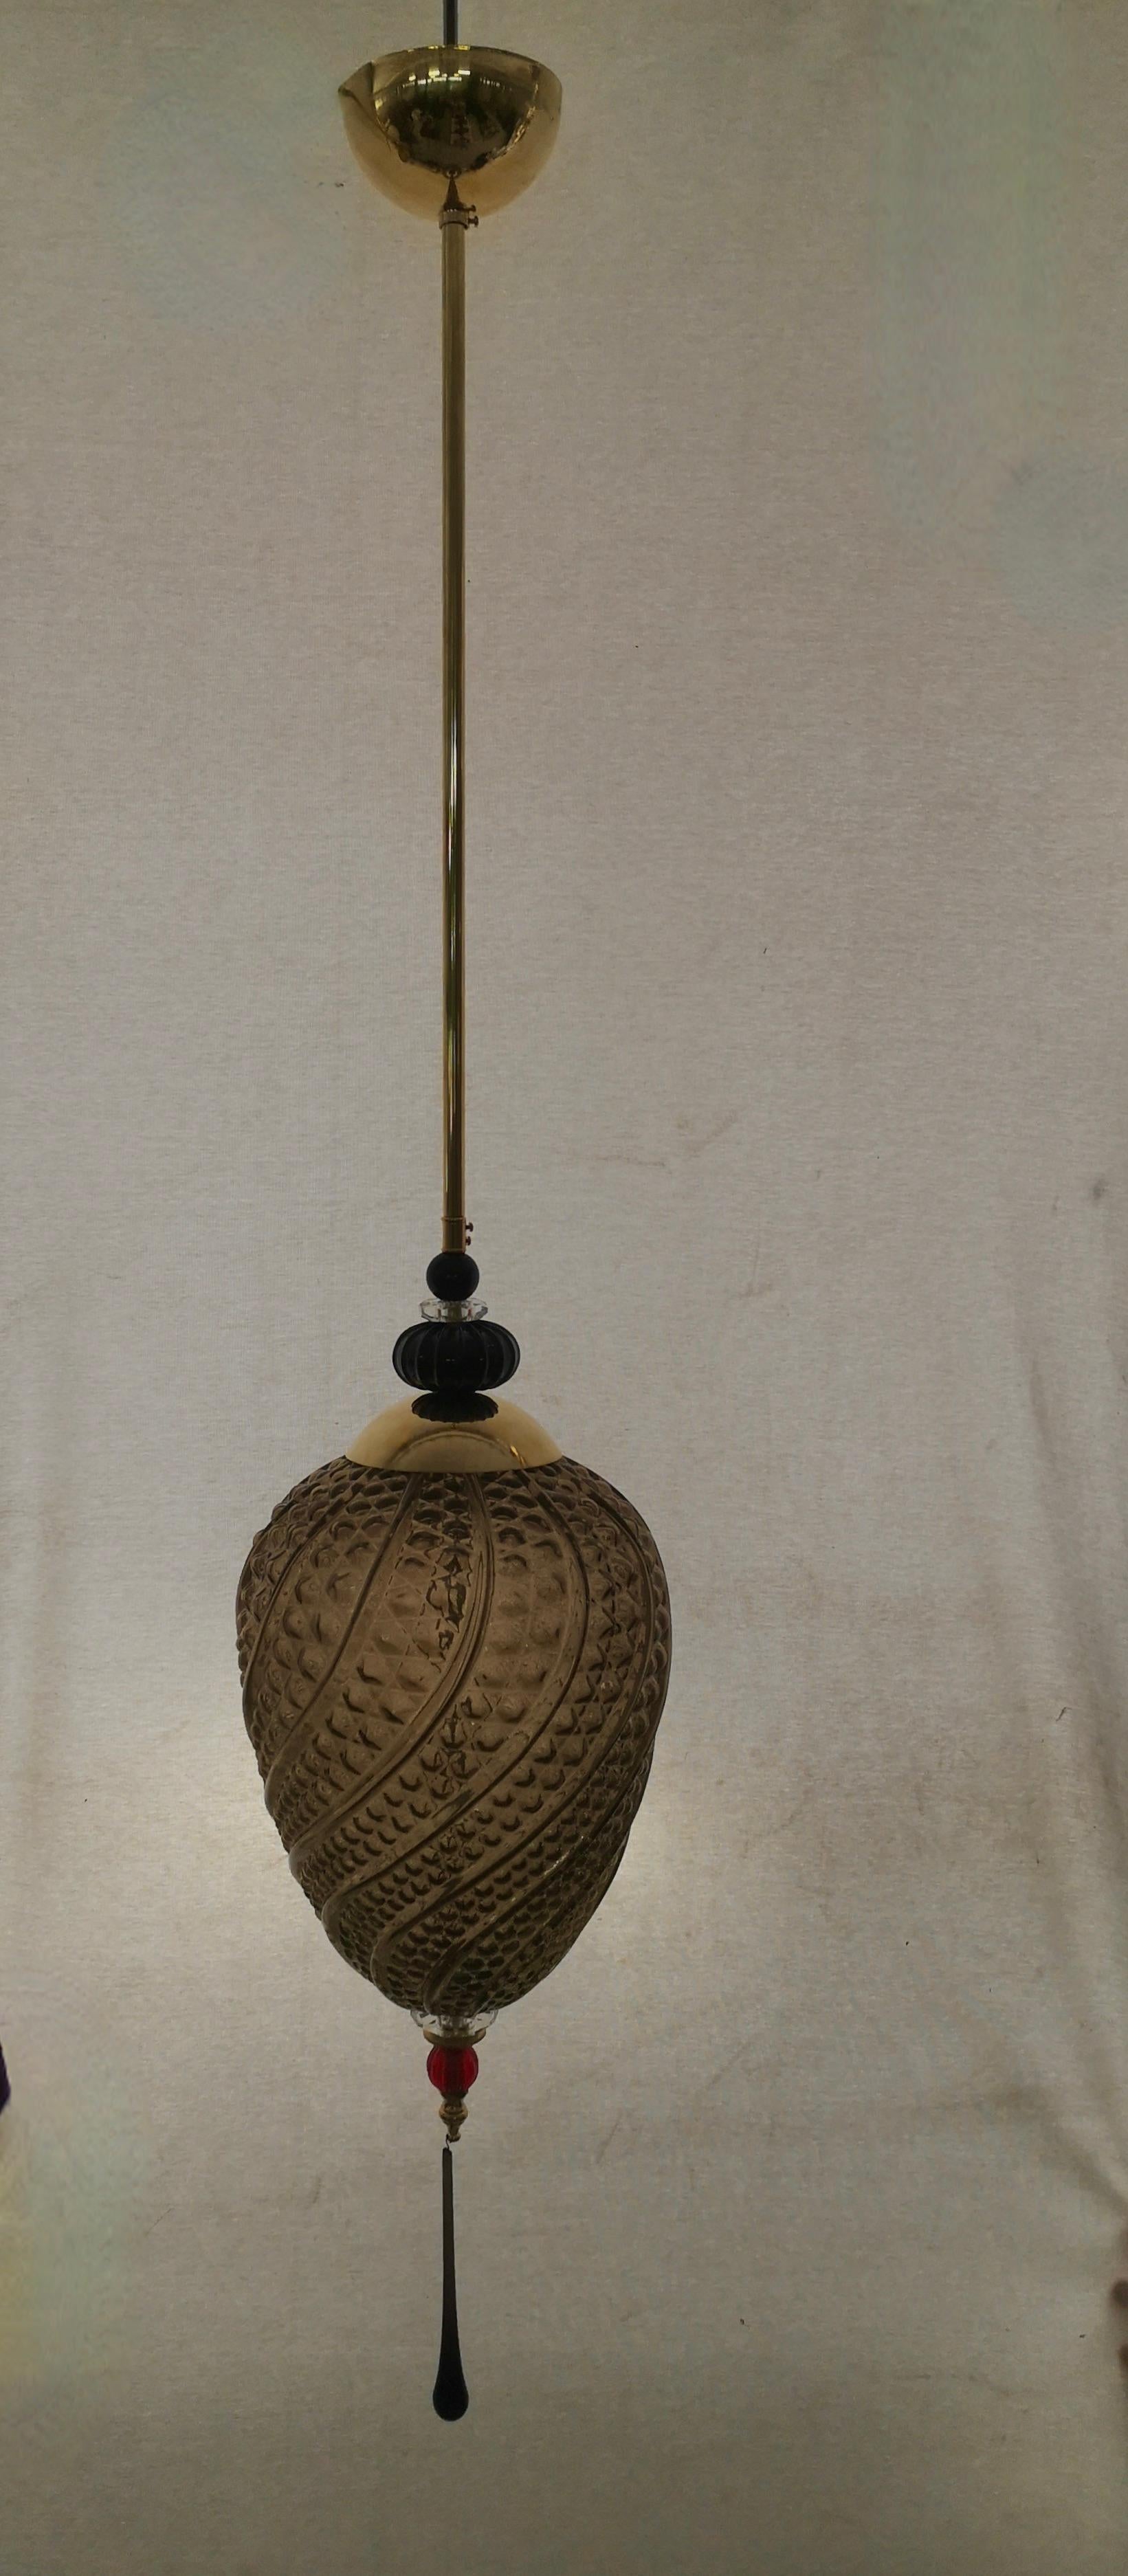 Précieuses lanternes en verre soufflé de Murano, leurs couleurs sont uniques, allant de la couleur fumée au noir en passant par le rouge. Objet très élégant et raffiné, il peut être placé à plusieurs endroits de la maison, par exemple en le